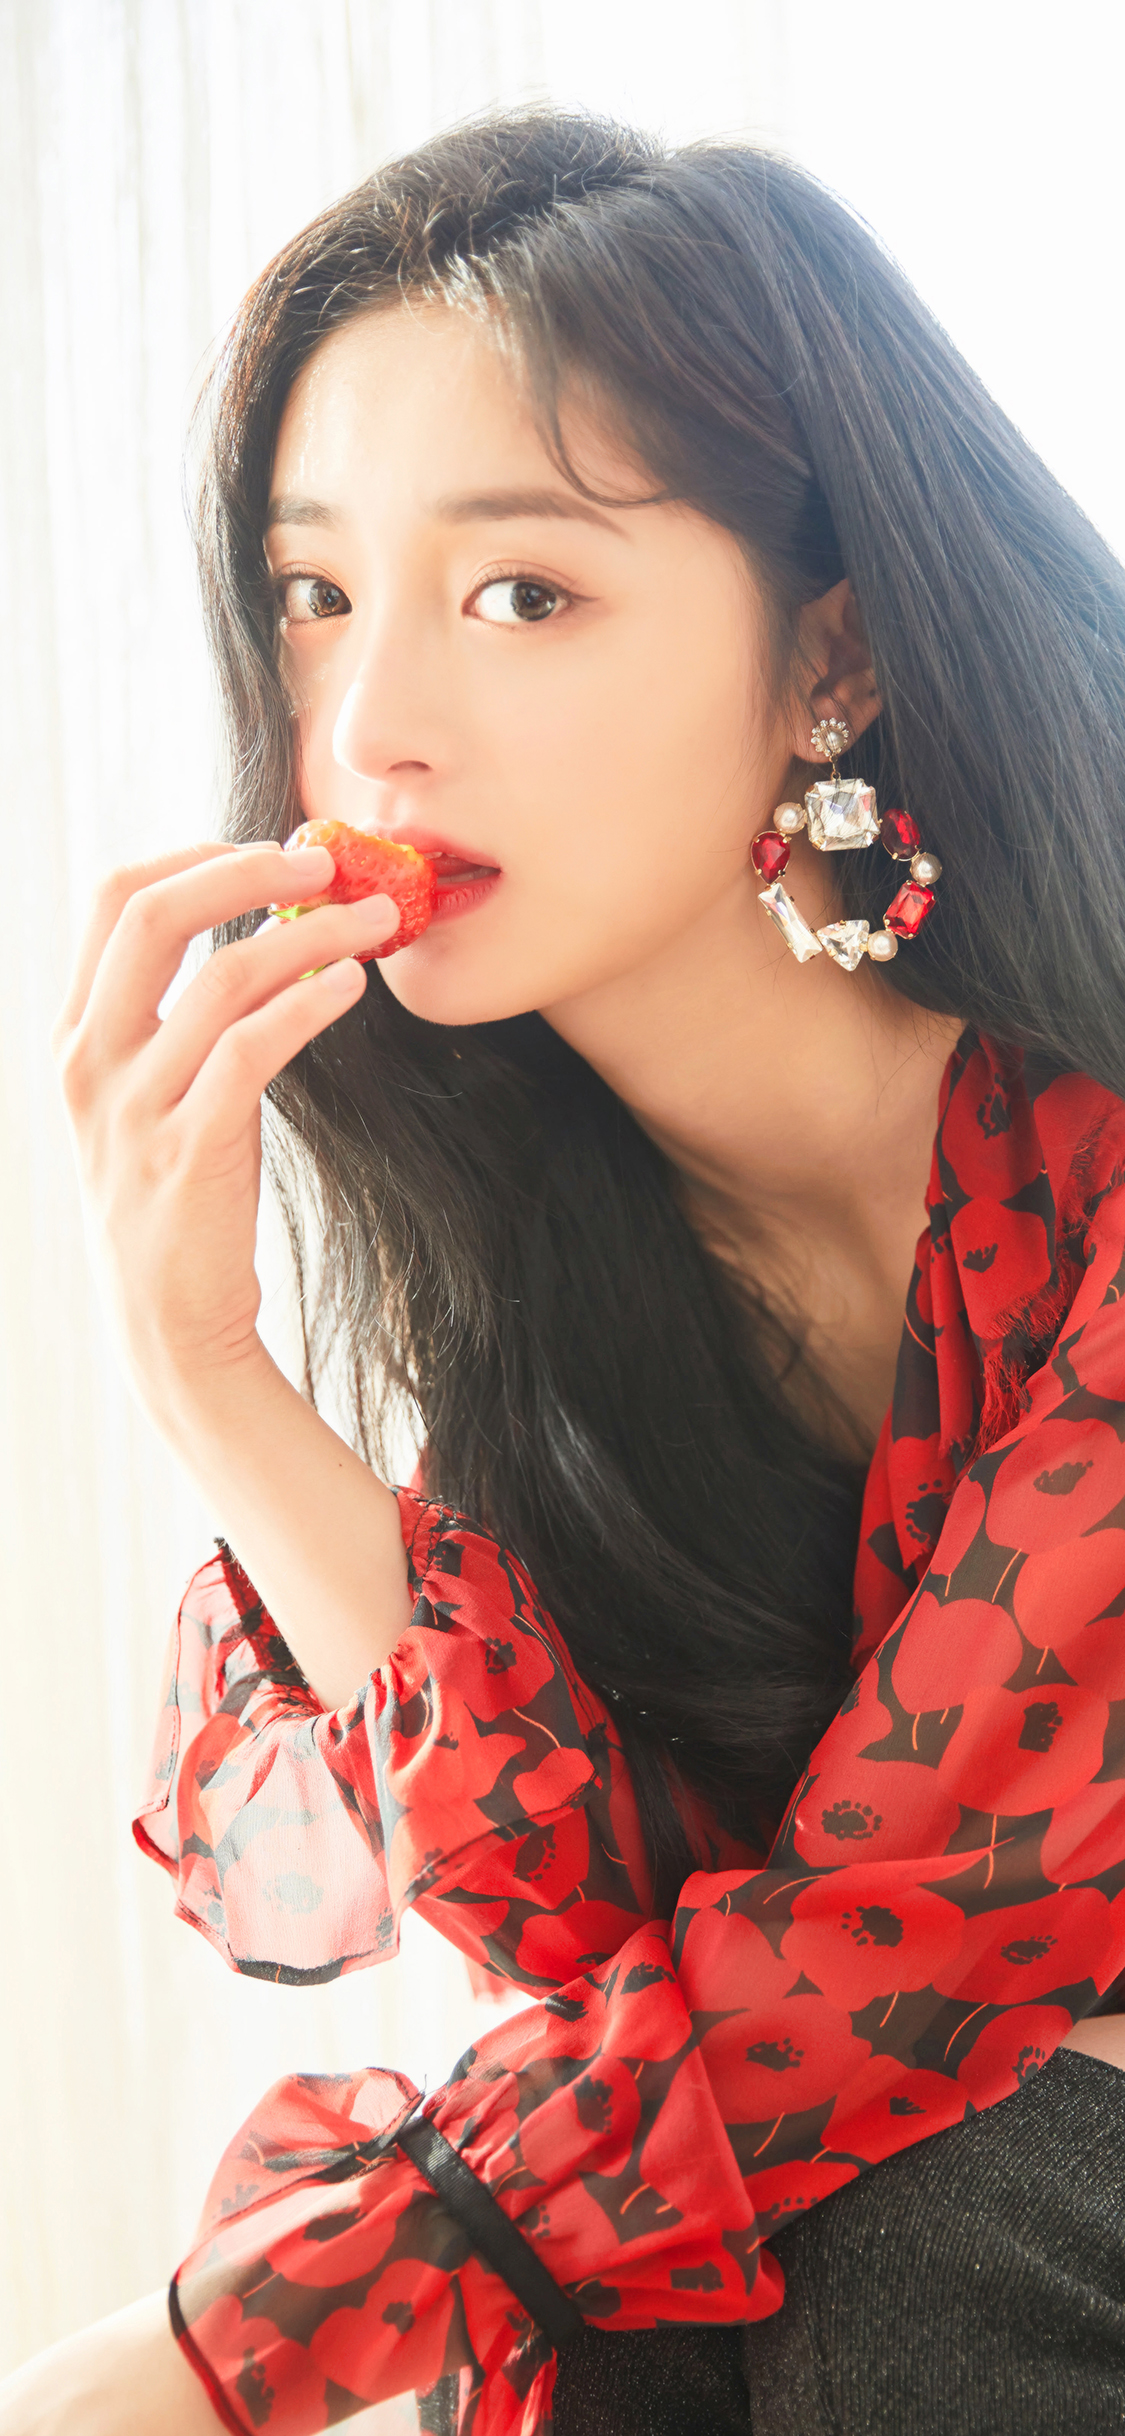 吃草莓的美女明星周洁琼